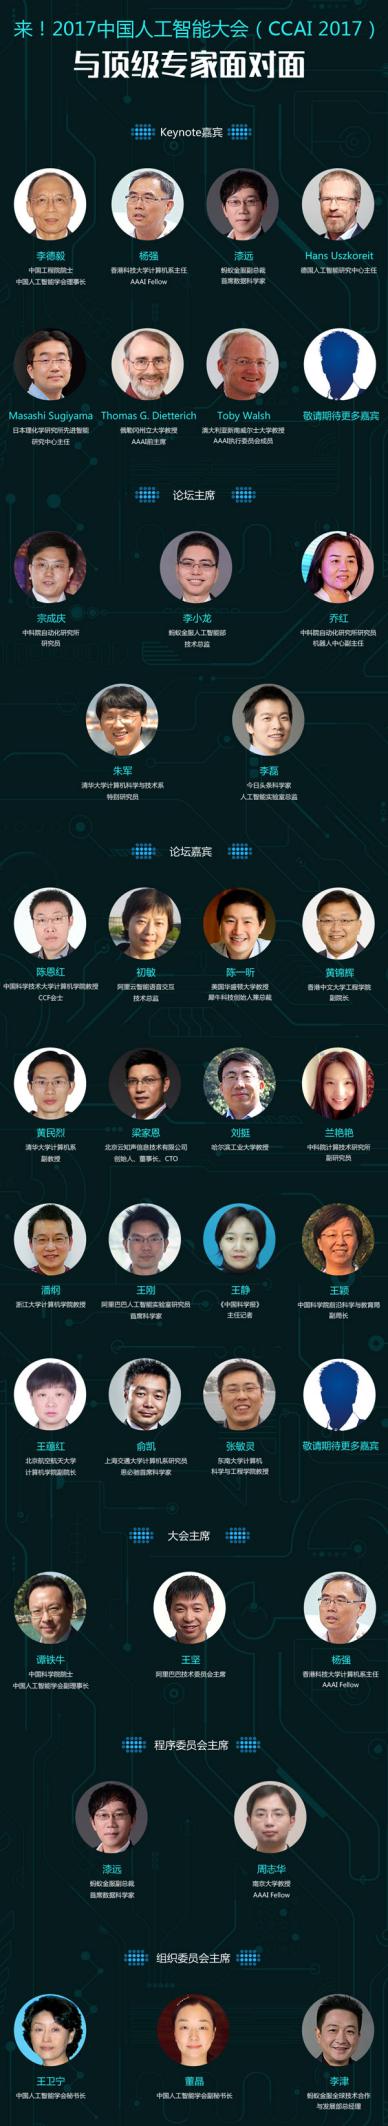 2017中国人工智能大会部分嘉宾